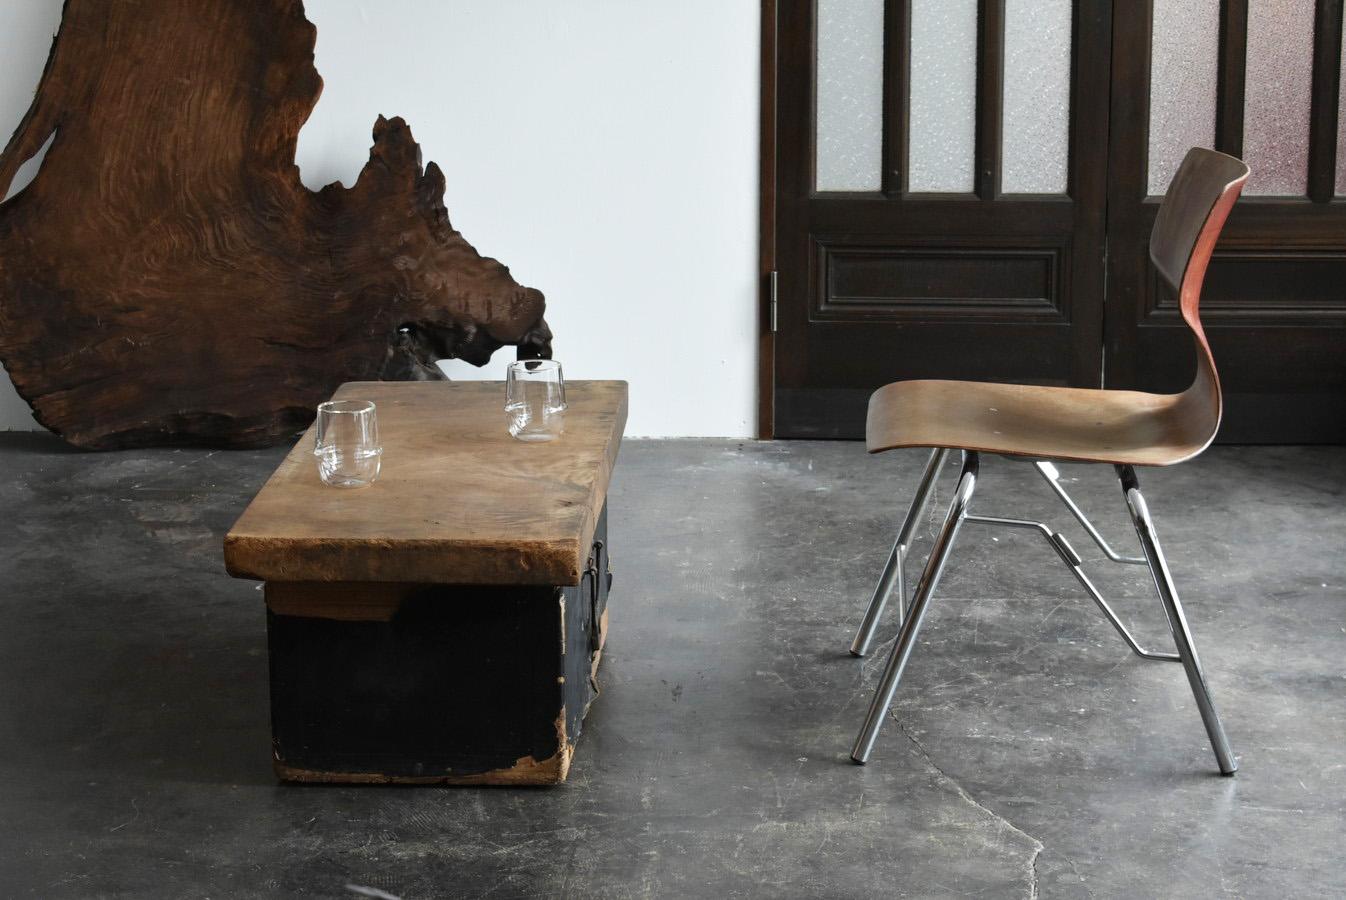 Dieser niedrige Tisch ist eine Kombination aus einer Holzkiste aus der späten Edo-Periode (1800er Jahre) in Japan und einem Holzbrett aus der Meiji-Taisho-Periode (1868-1920).

Es ist wahrscheinlich, dass die Holzkiste zur Aufbewahrung von Stoffen